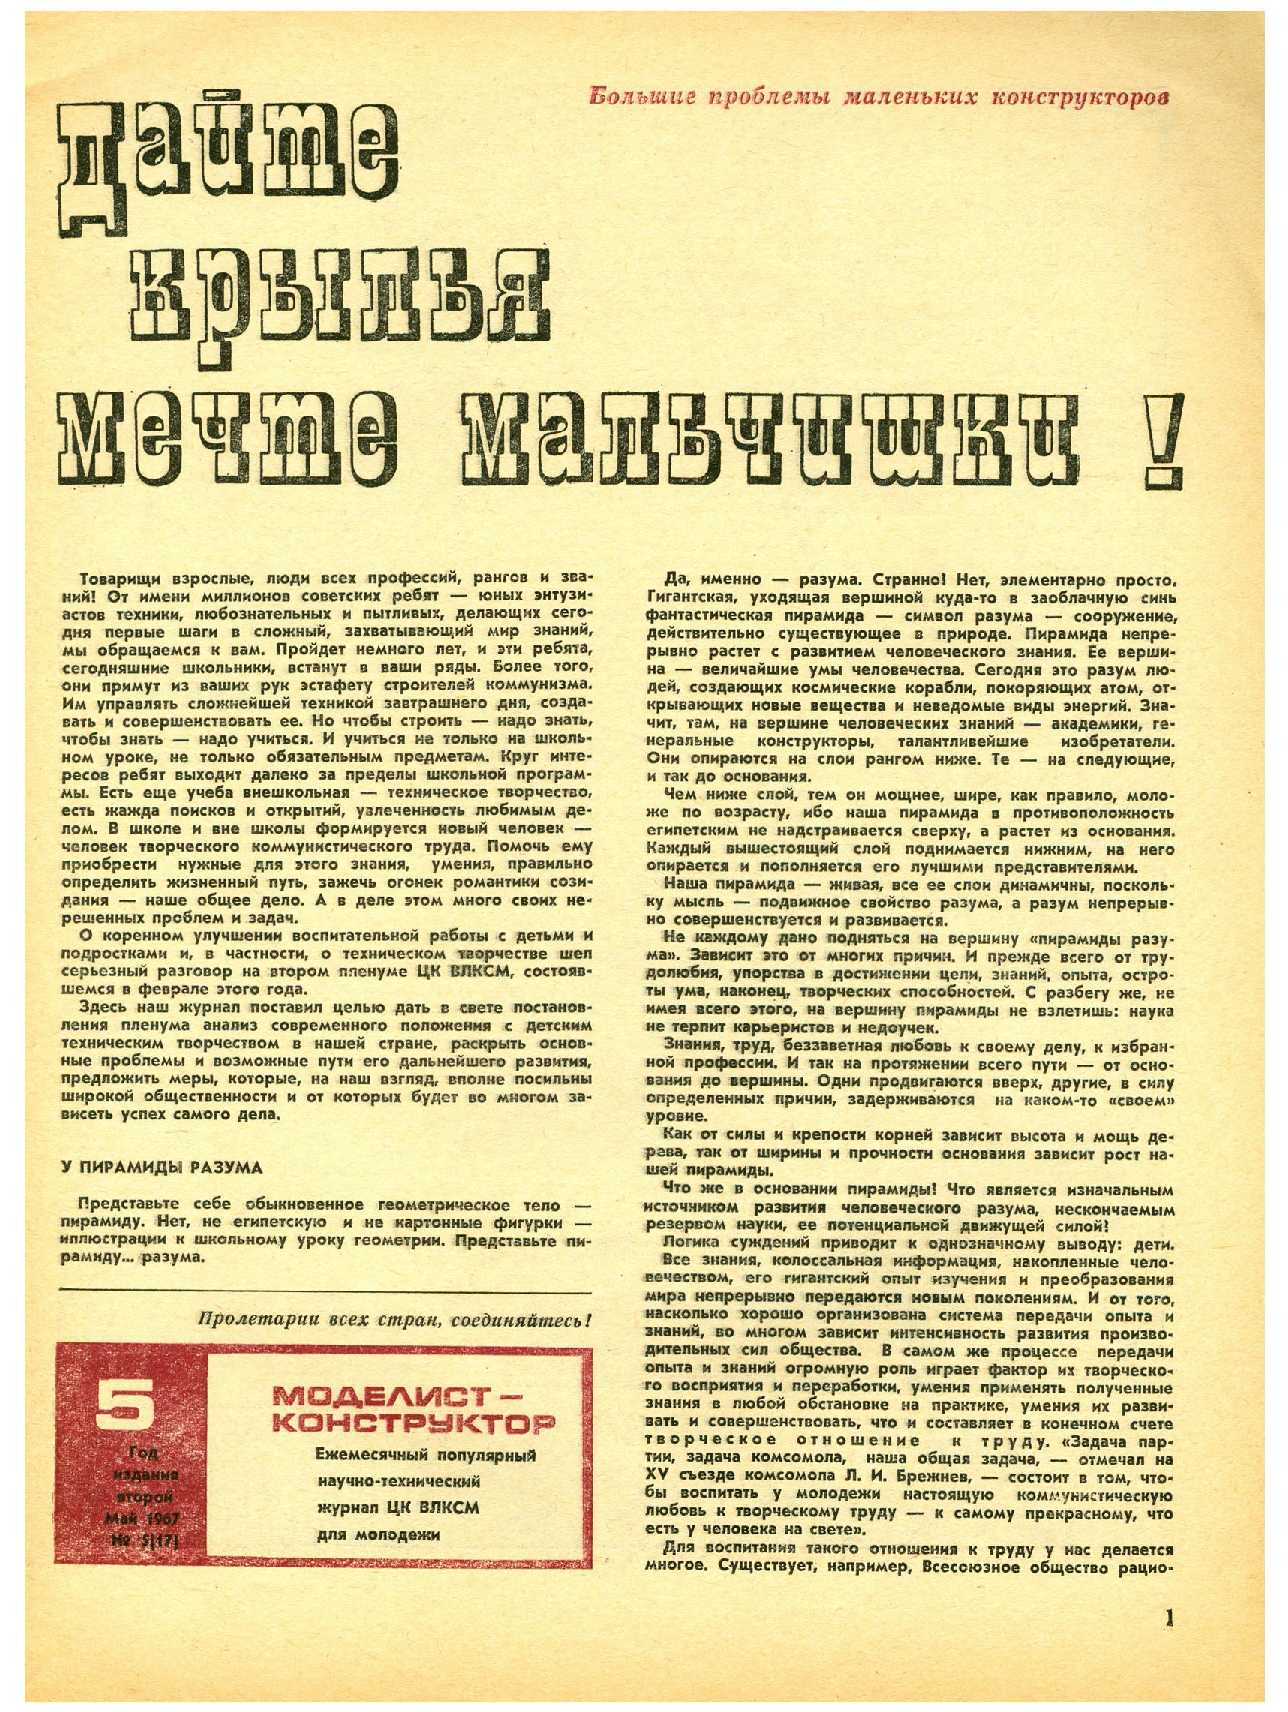 МК 5, 1967, 1 c.